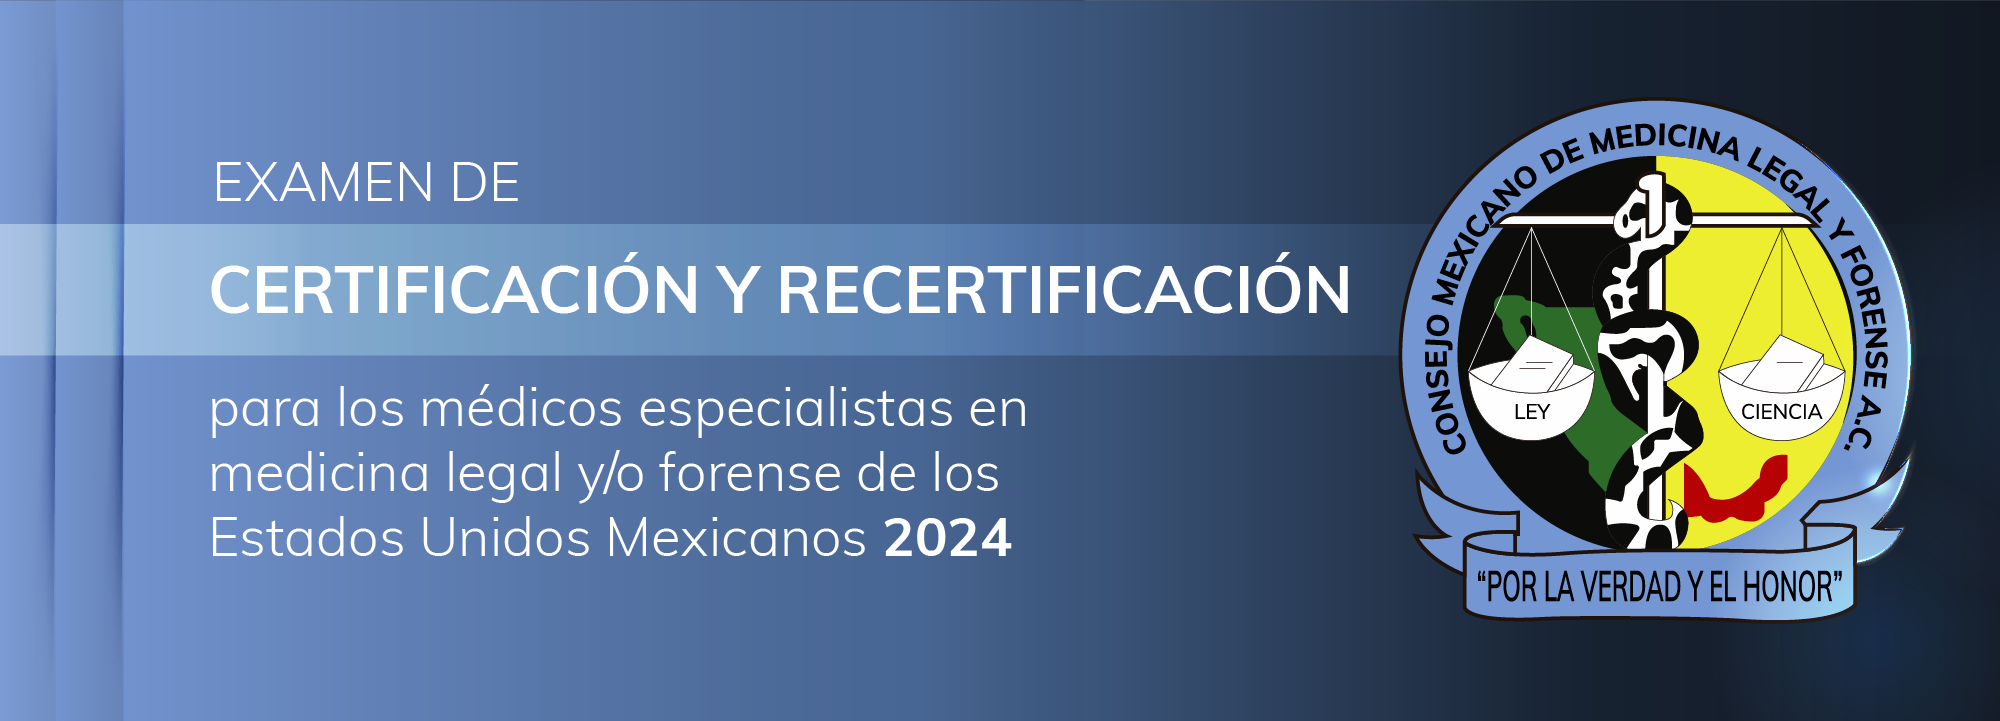 Examen de certificación y recertificación - julio 2024 Exa-001